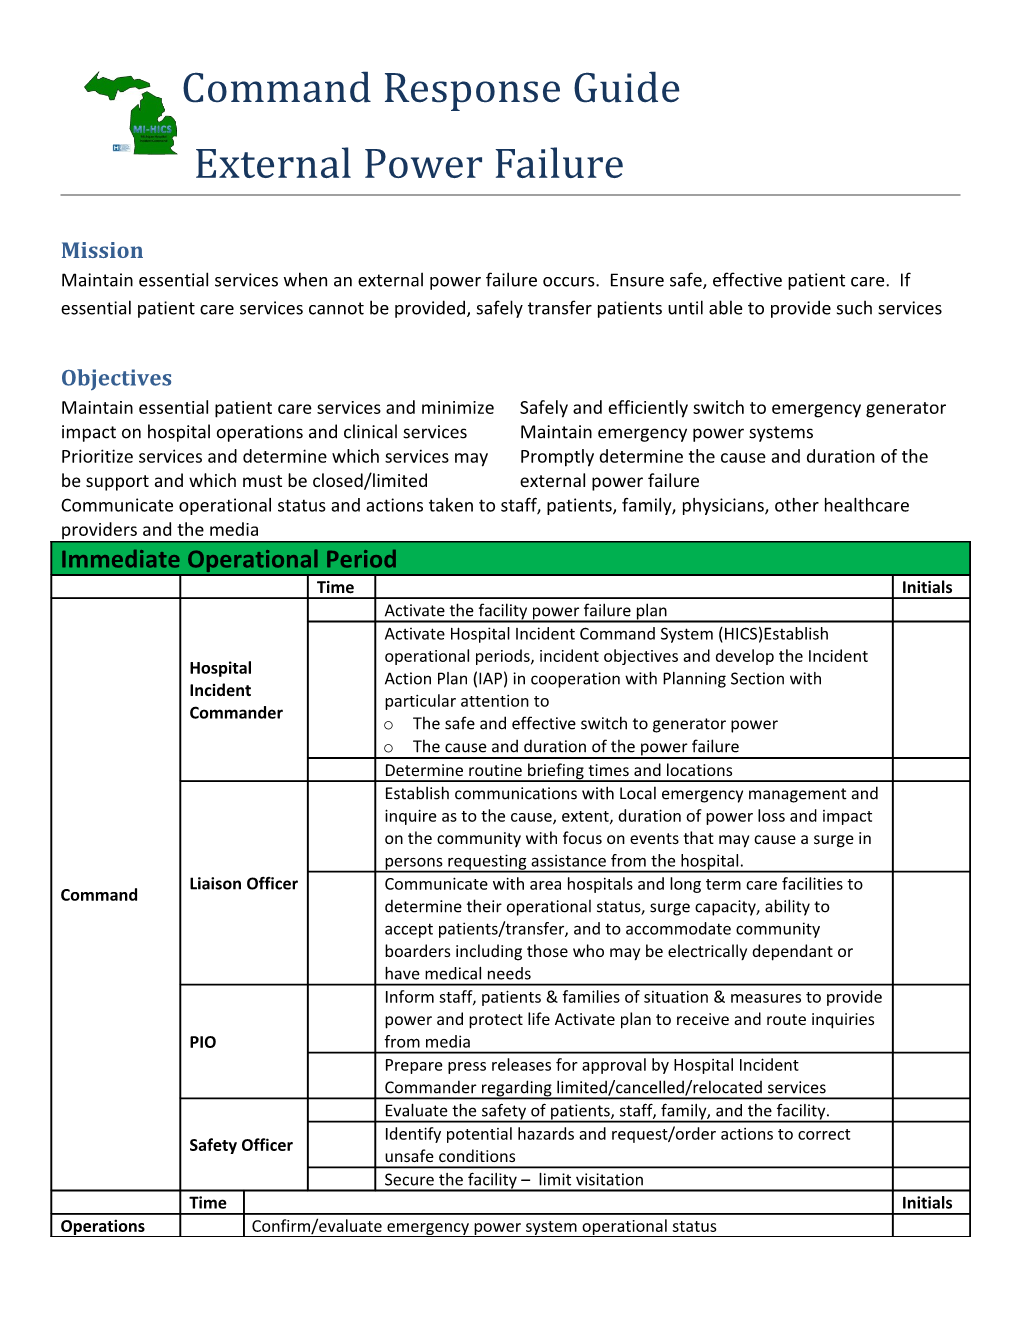 External Power Failure